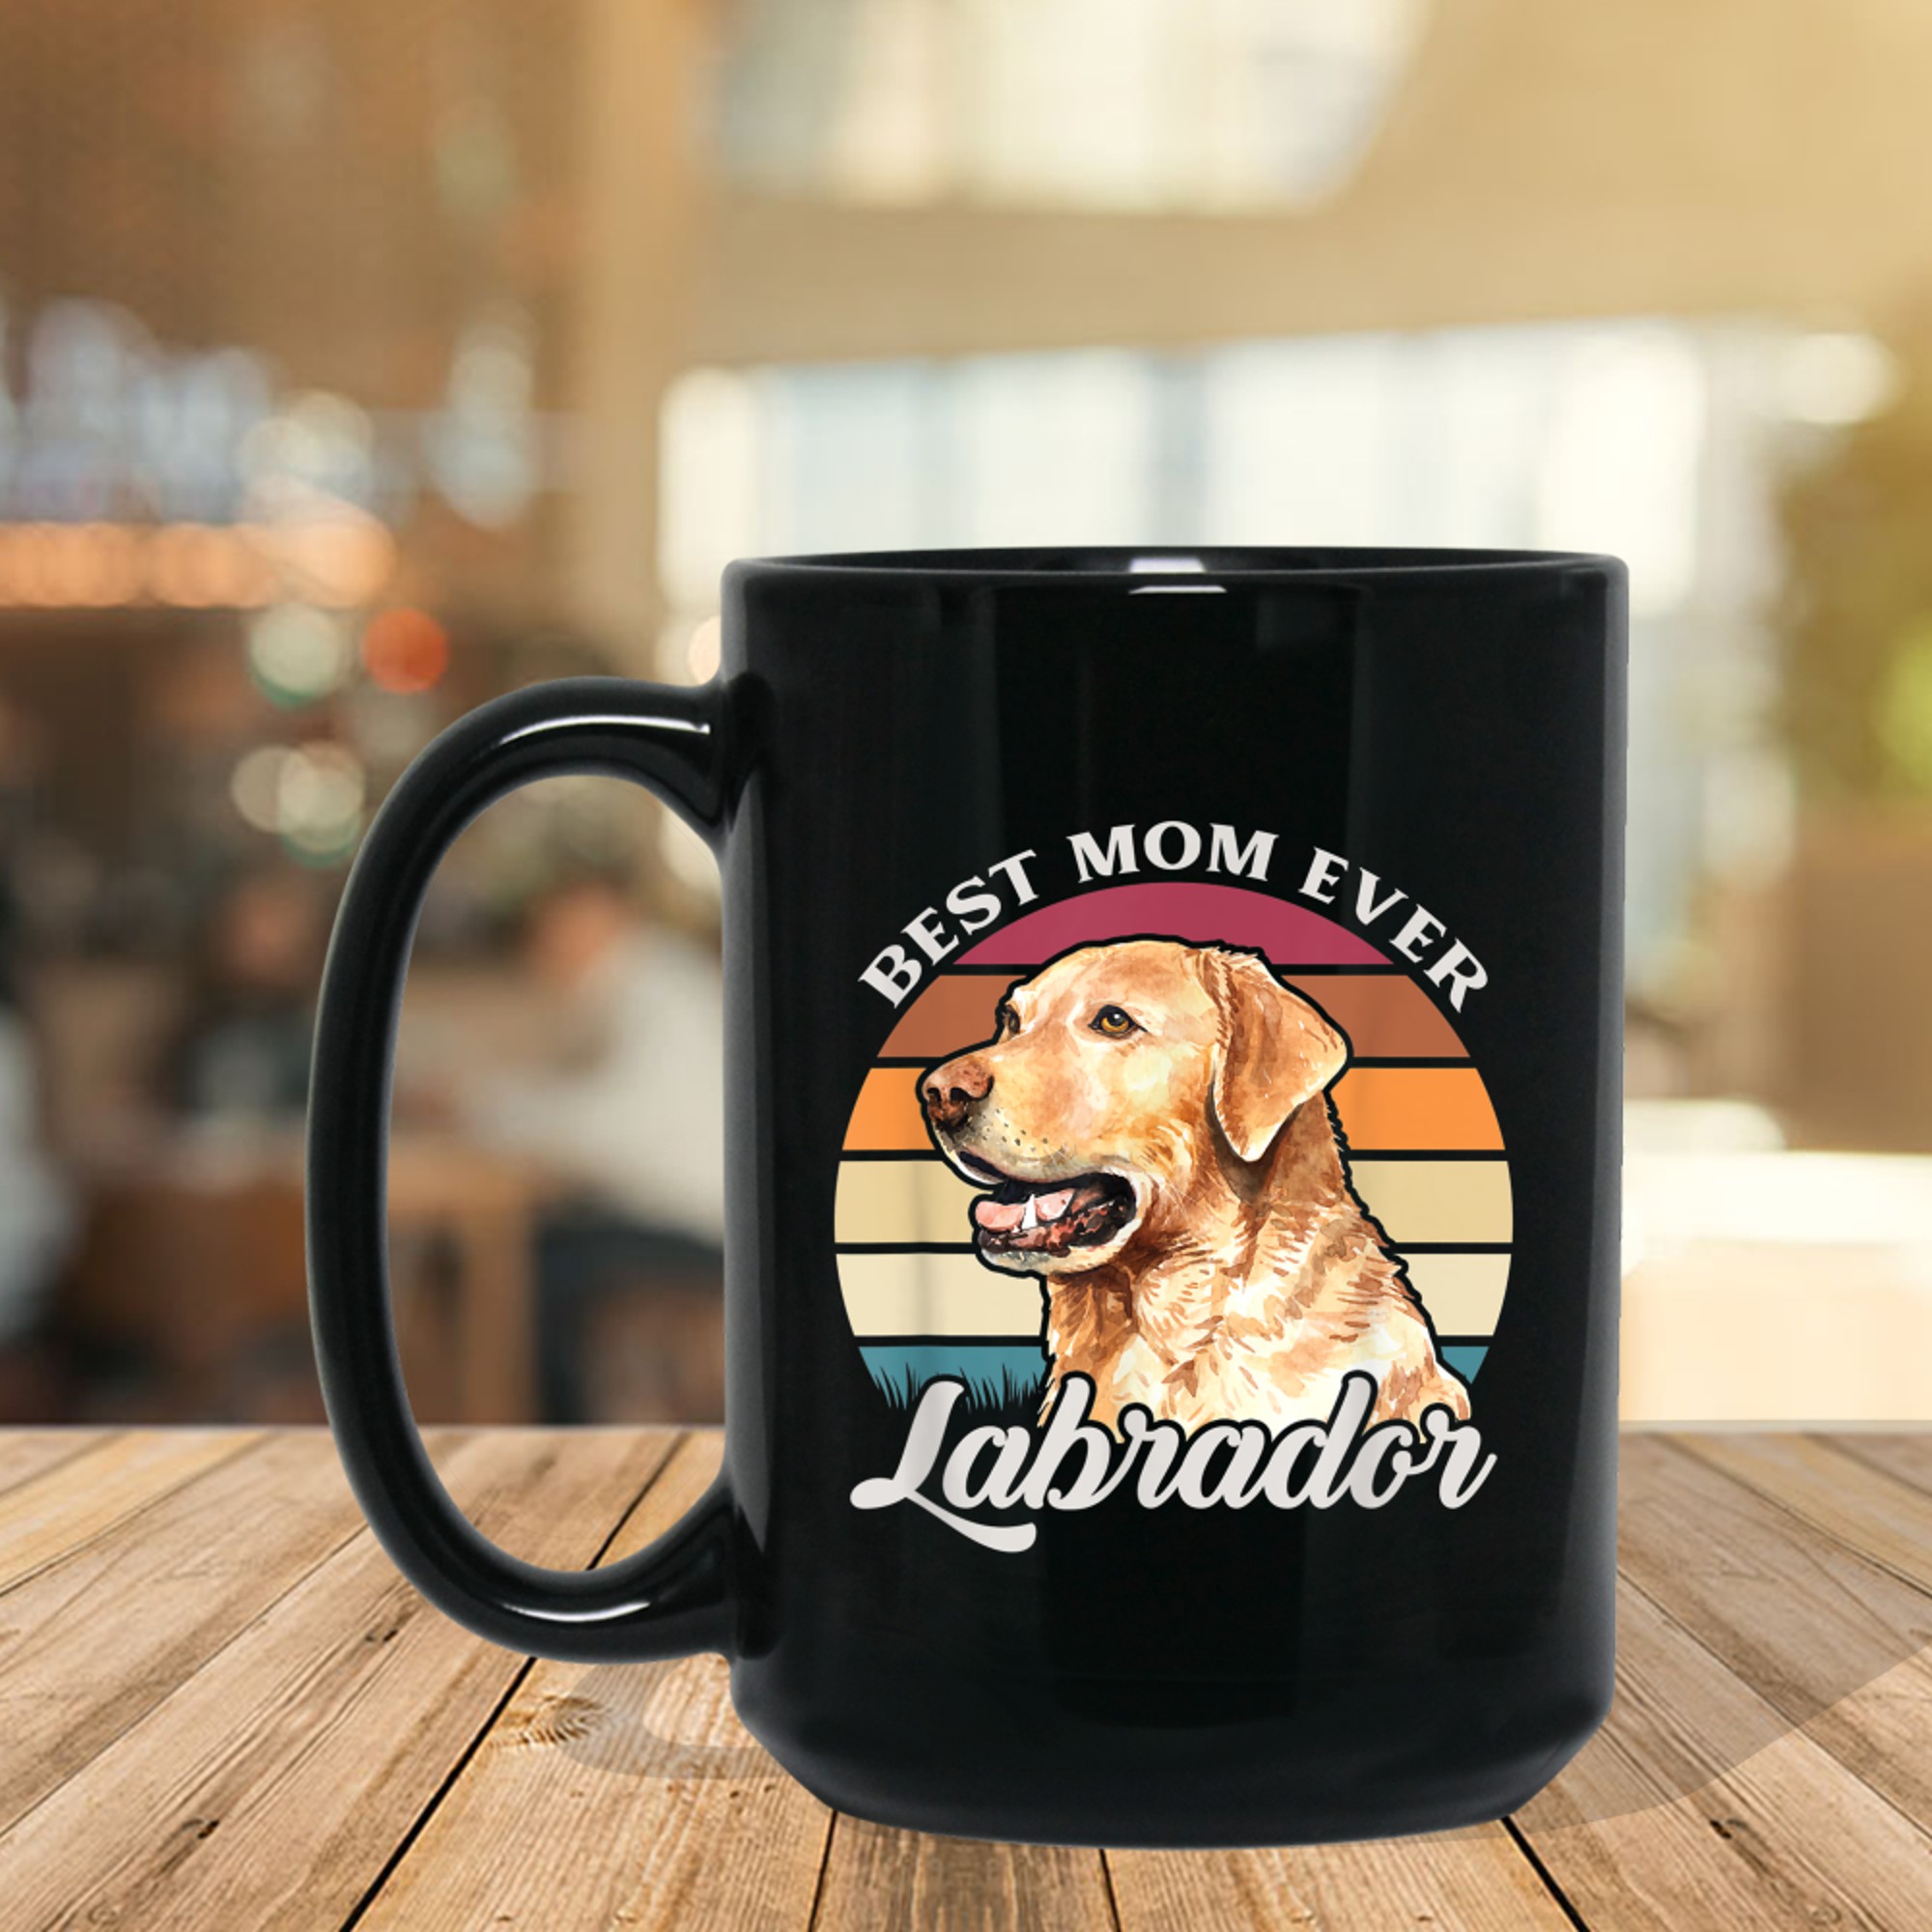 Best Mom Ever Labrador Dog Owner Gift mug black